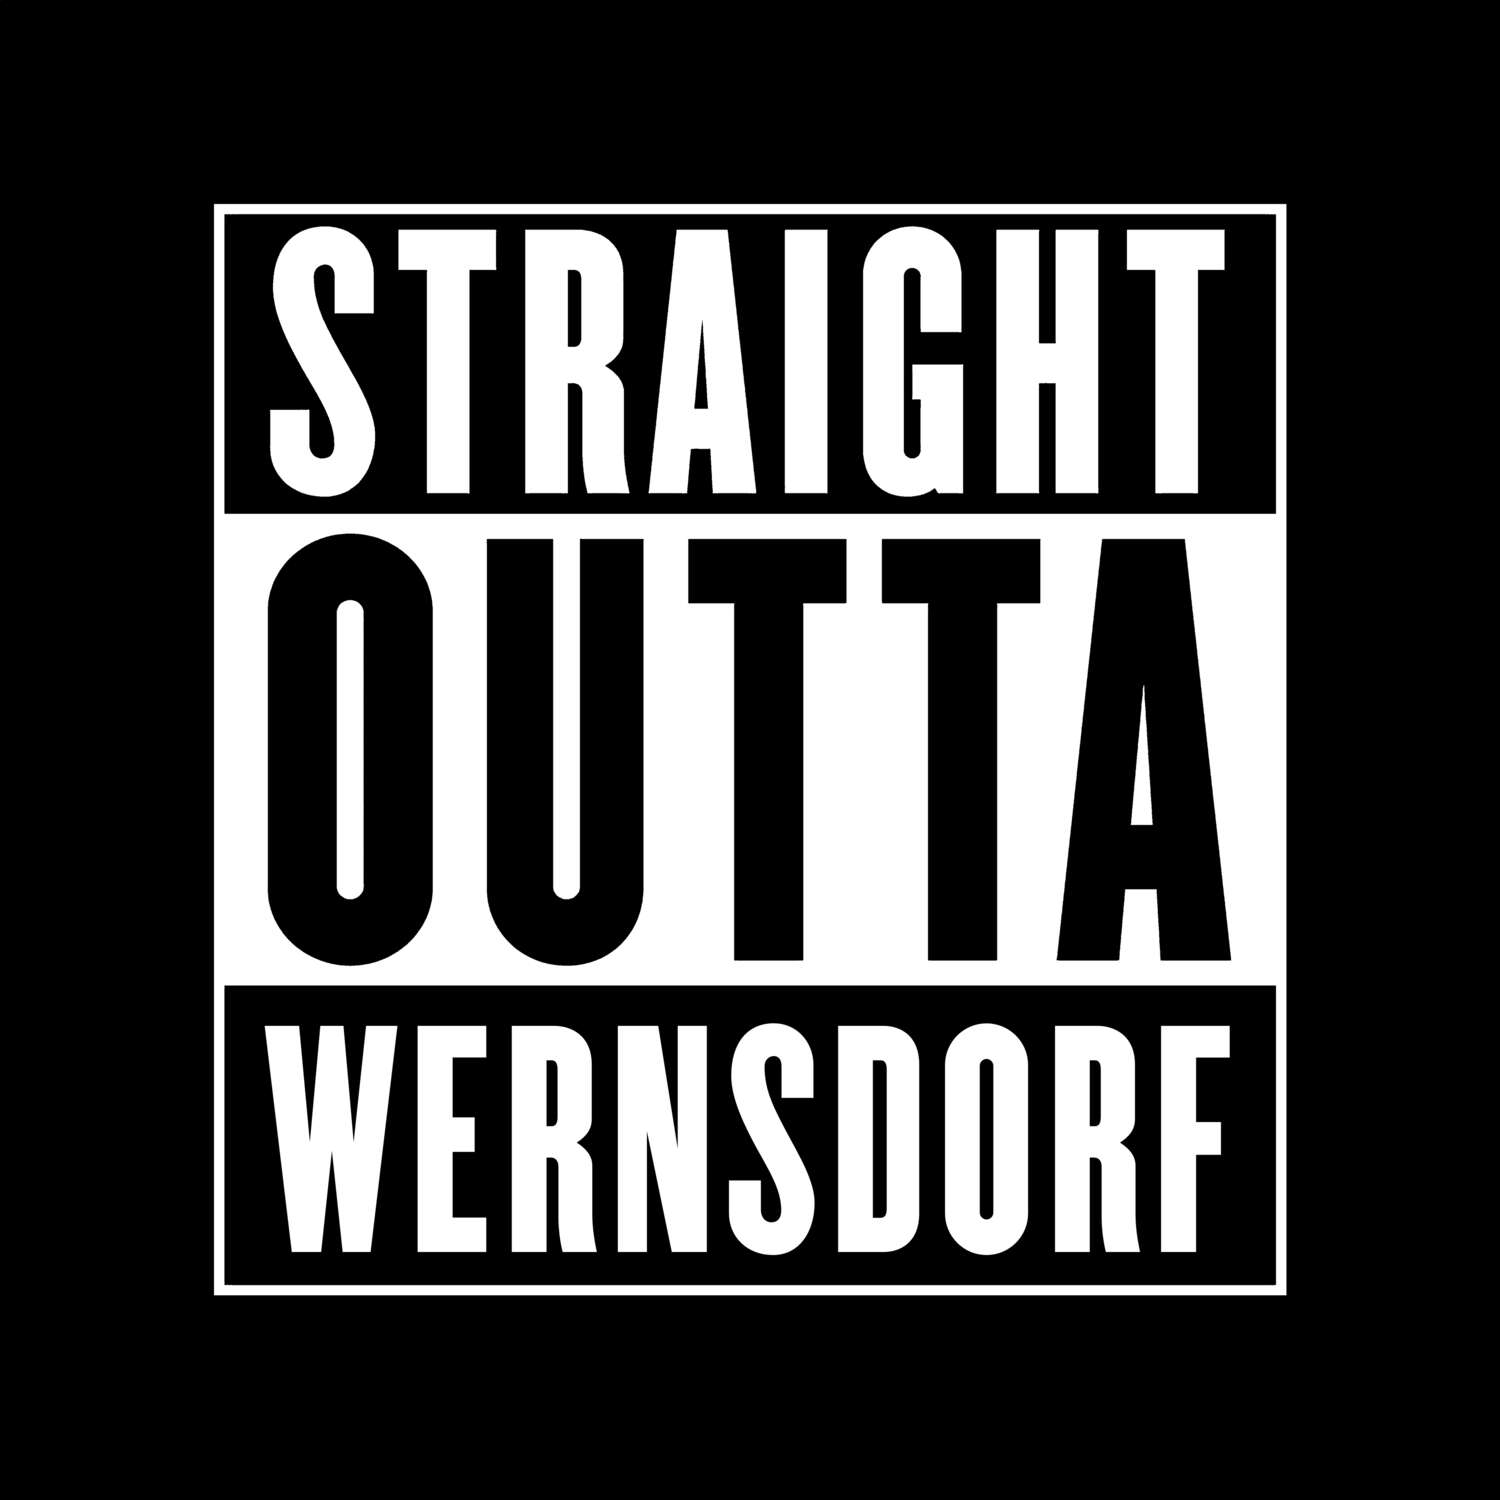 Wernsdorf T-Shirt »Straight Outta«